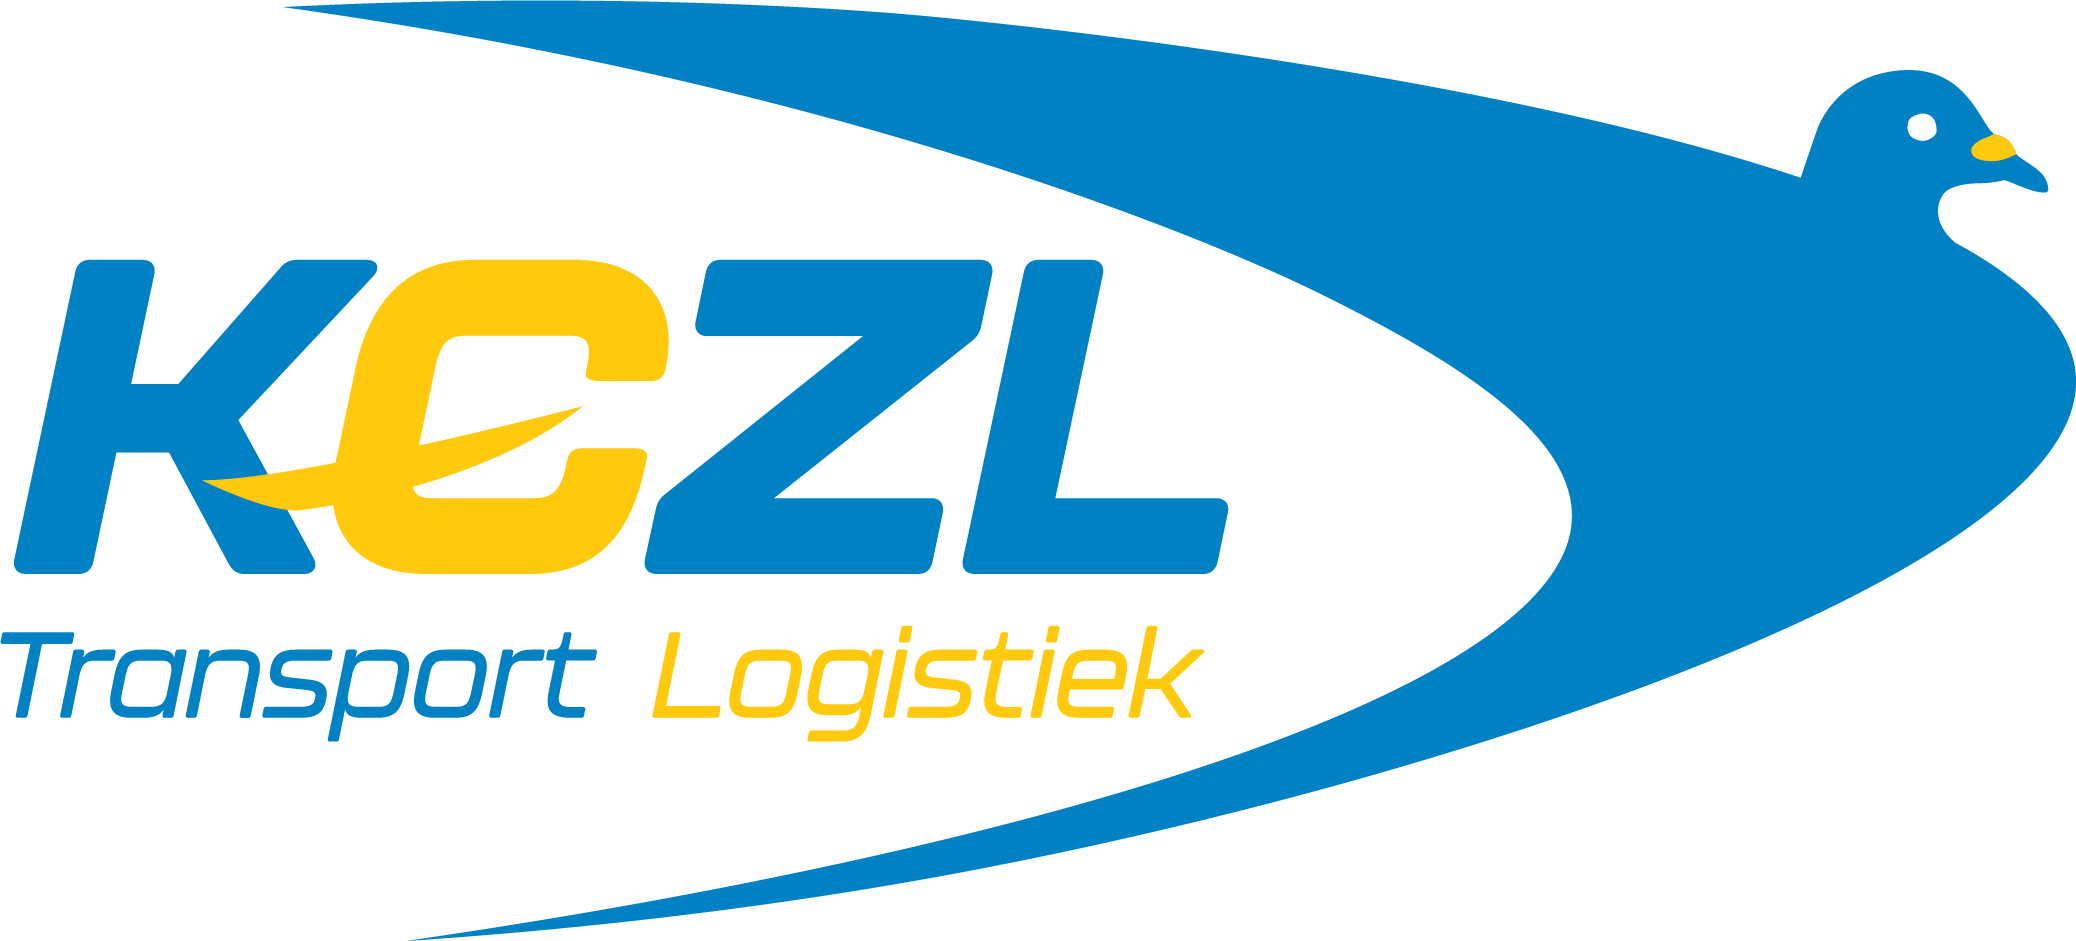 KCZL Transport & Logistiek